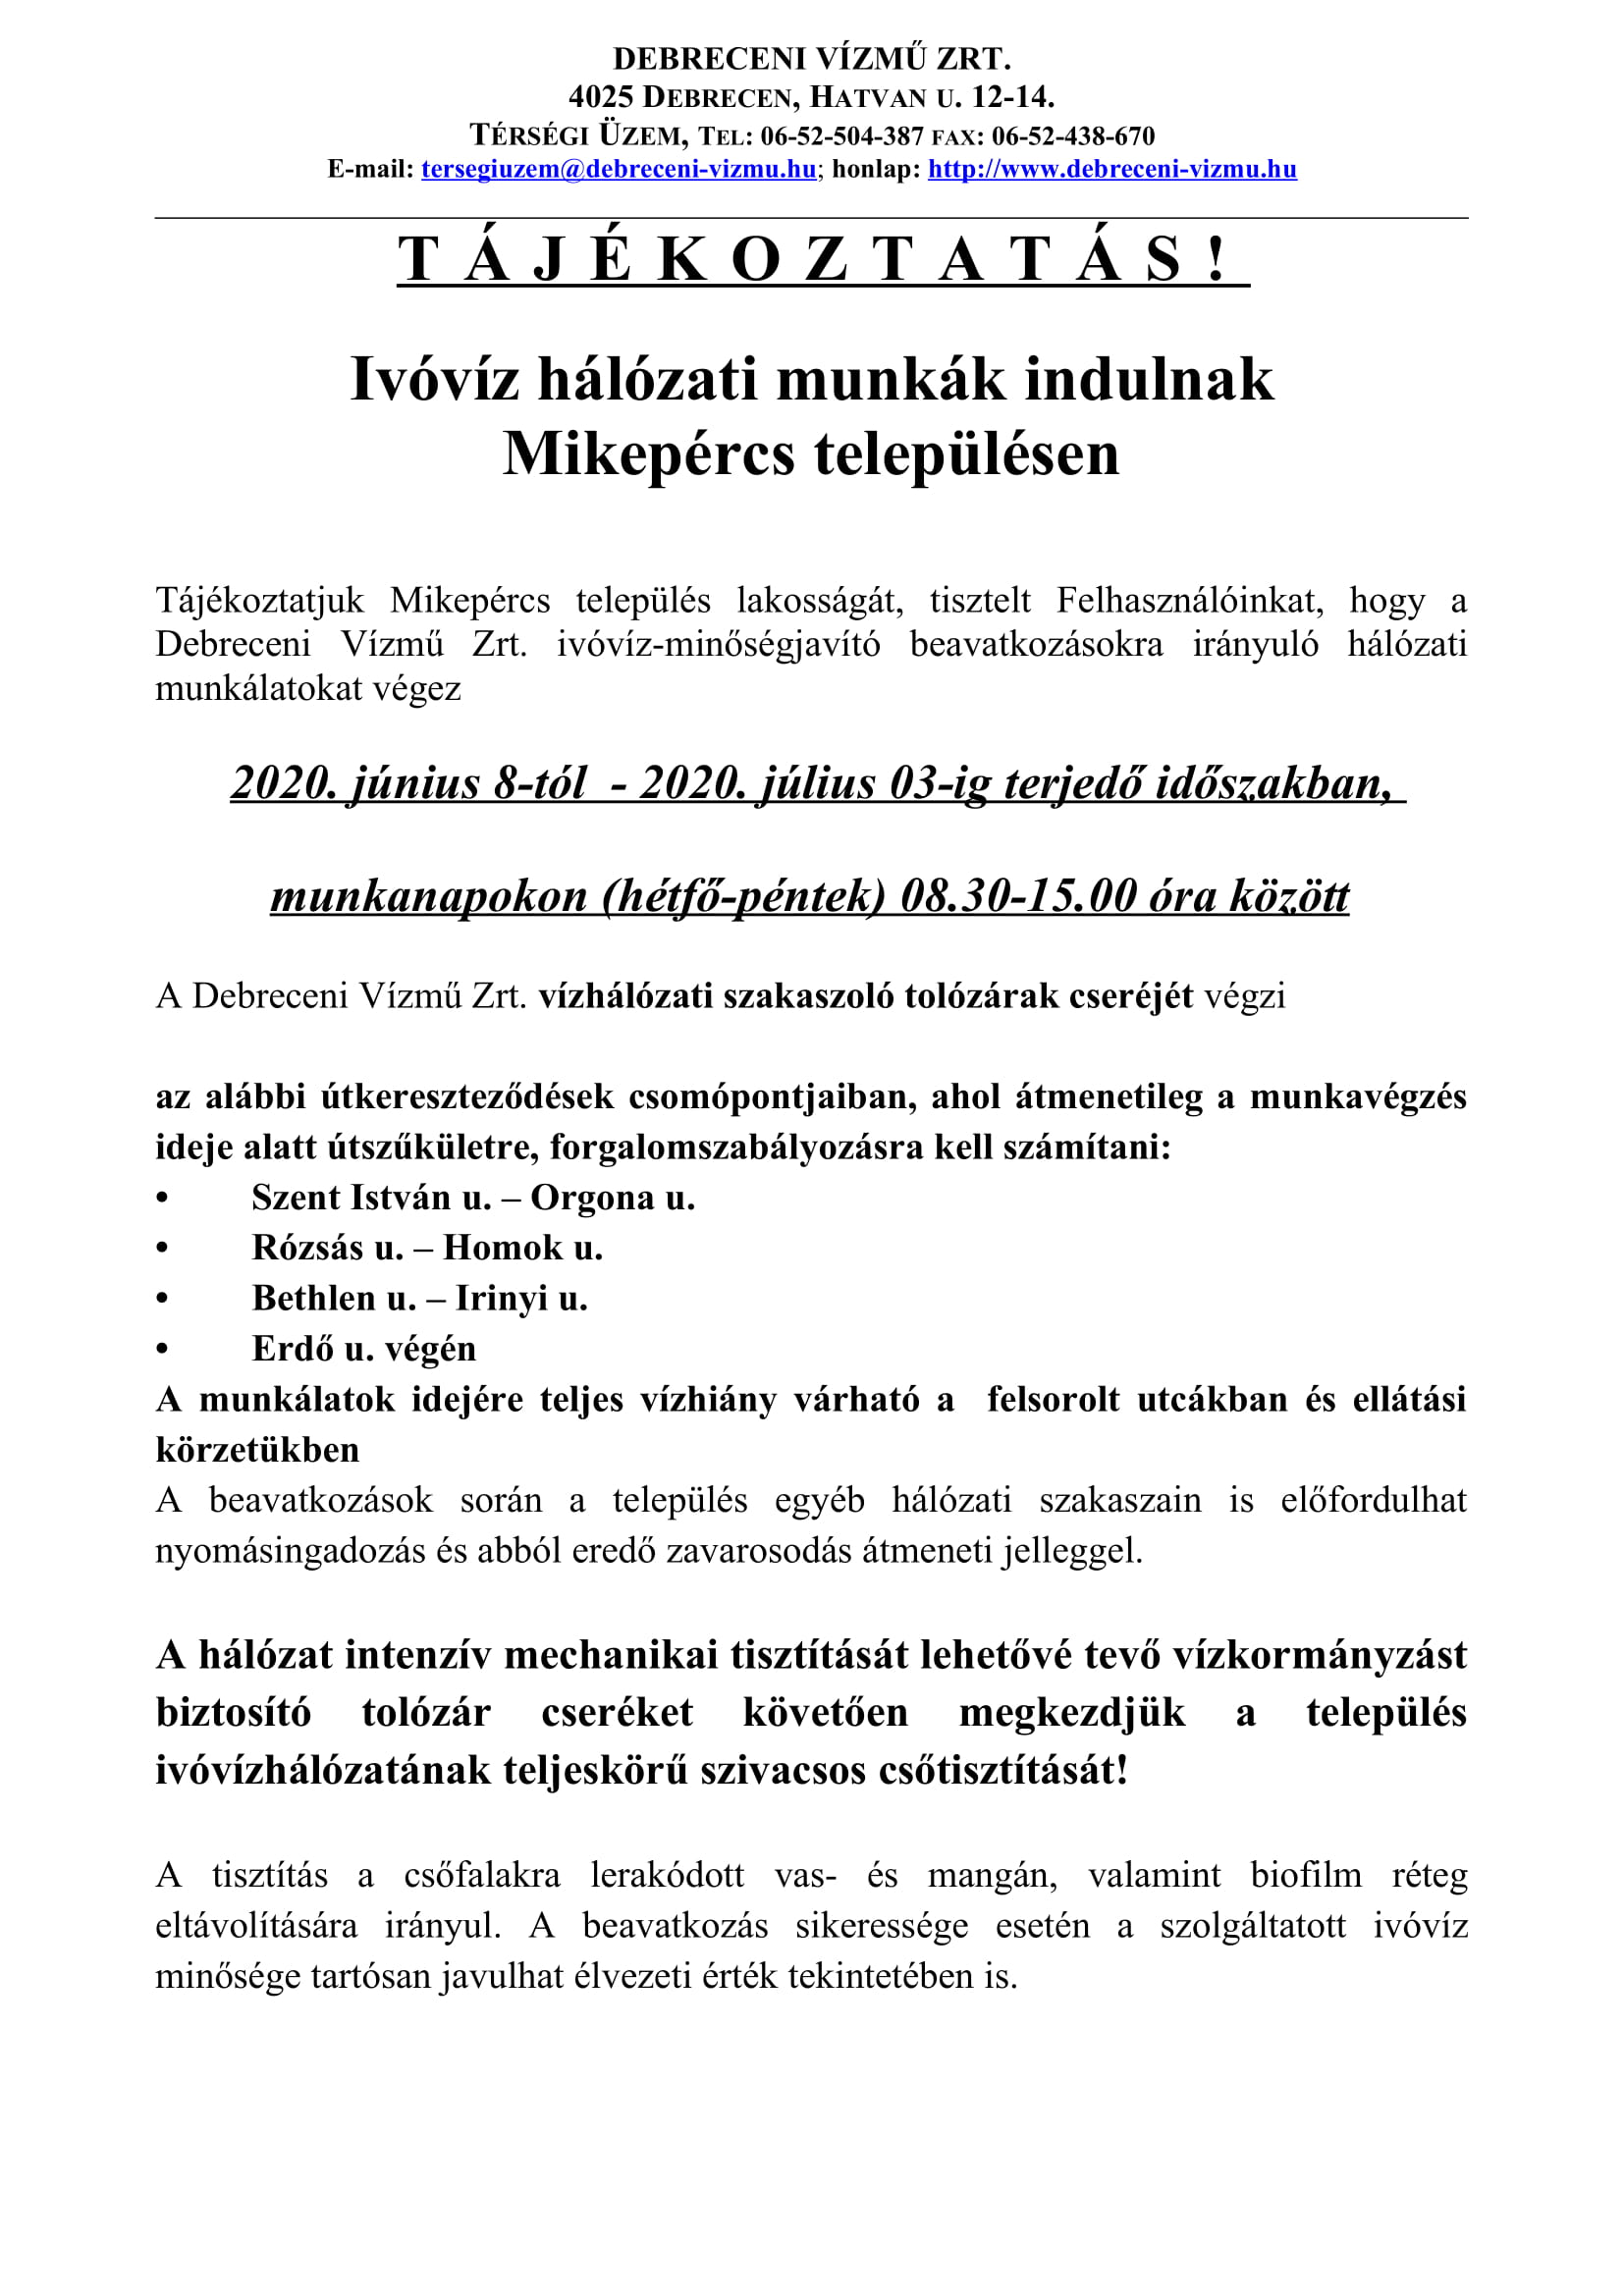 Debreceni Vízmű Zrt. munkálatokat végez június 8 és július 3 között Mikepércsen